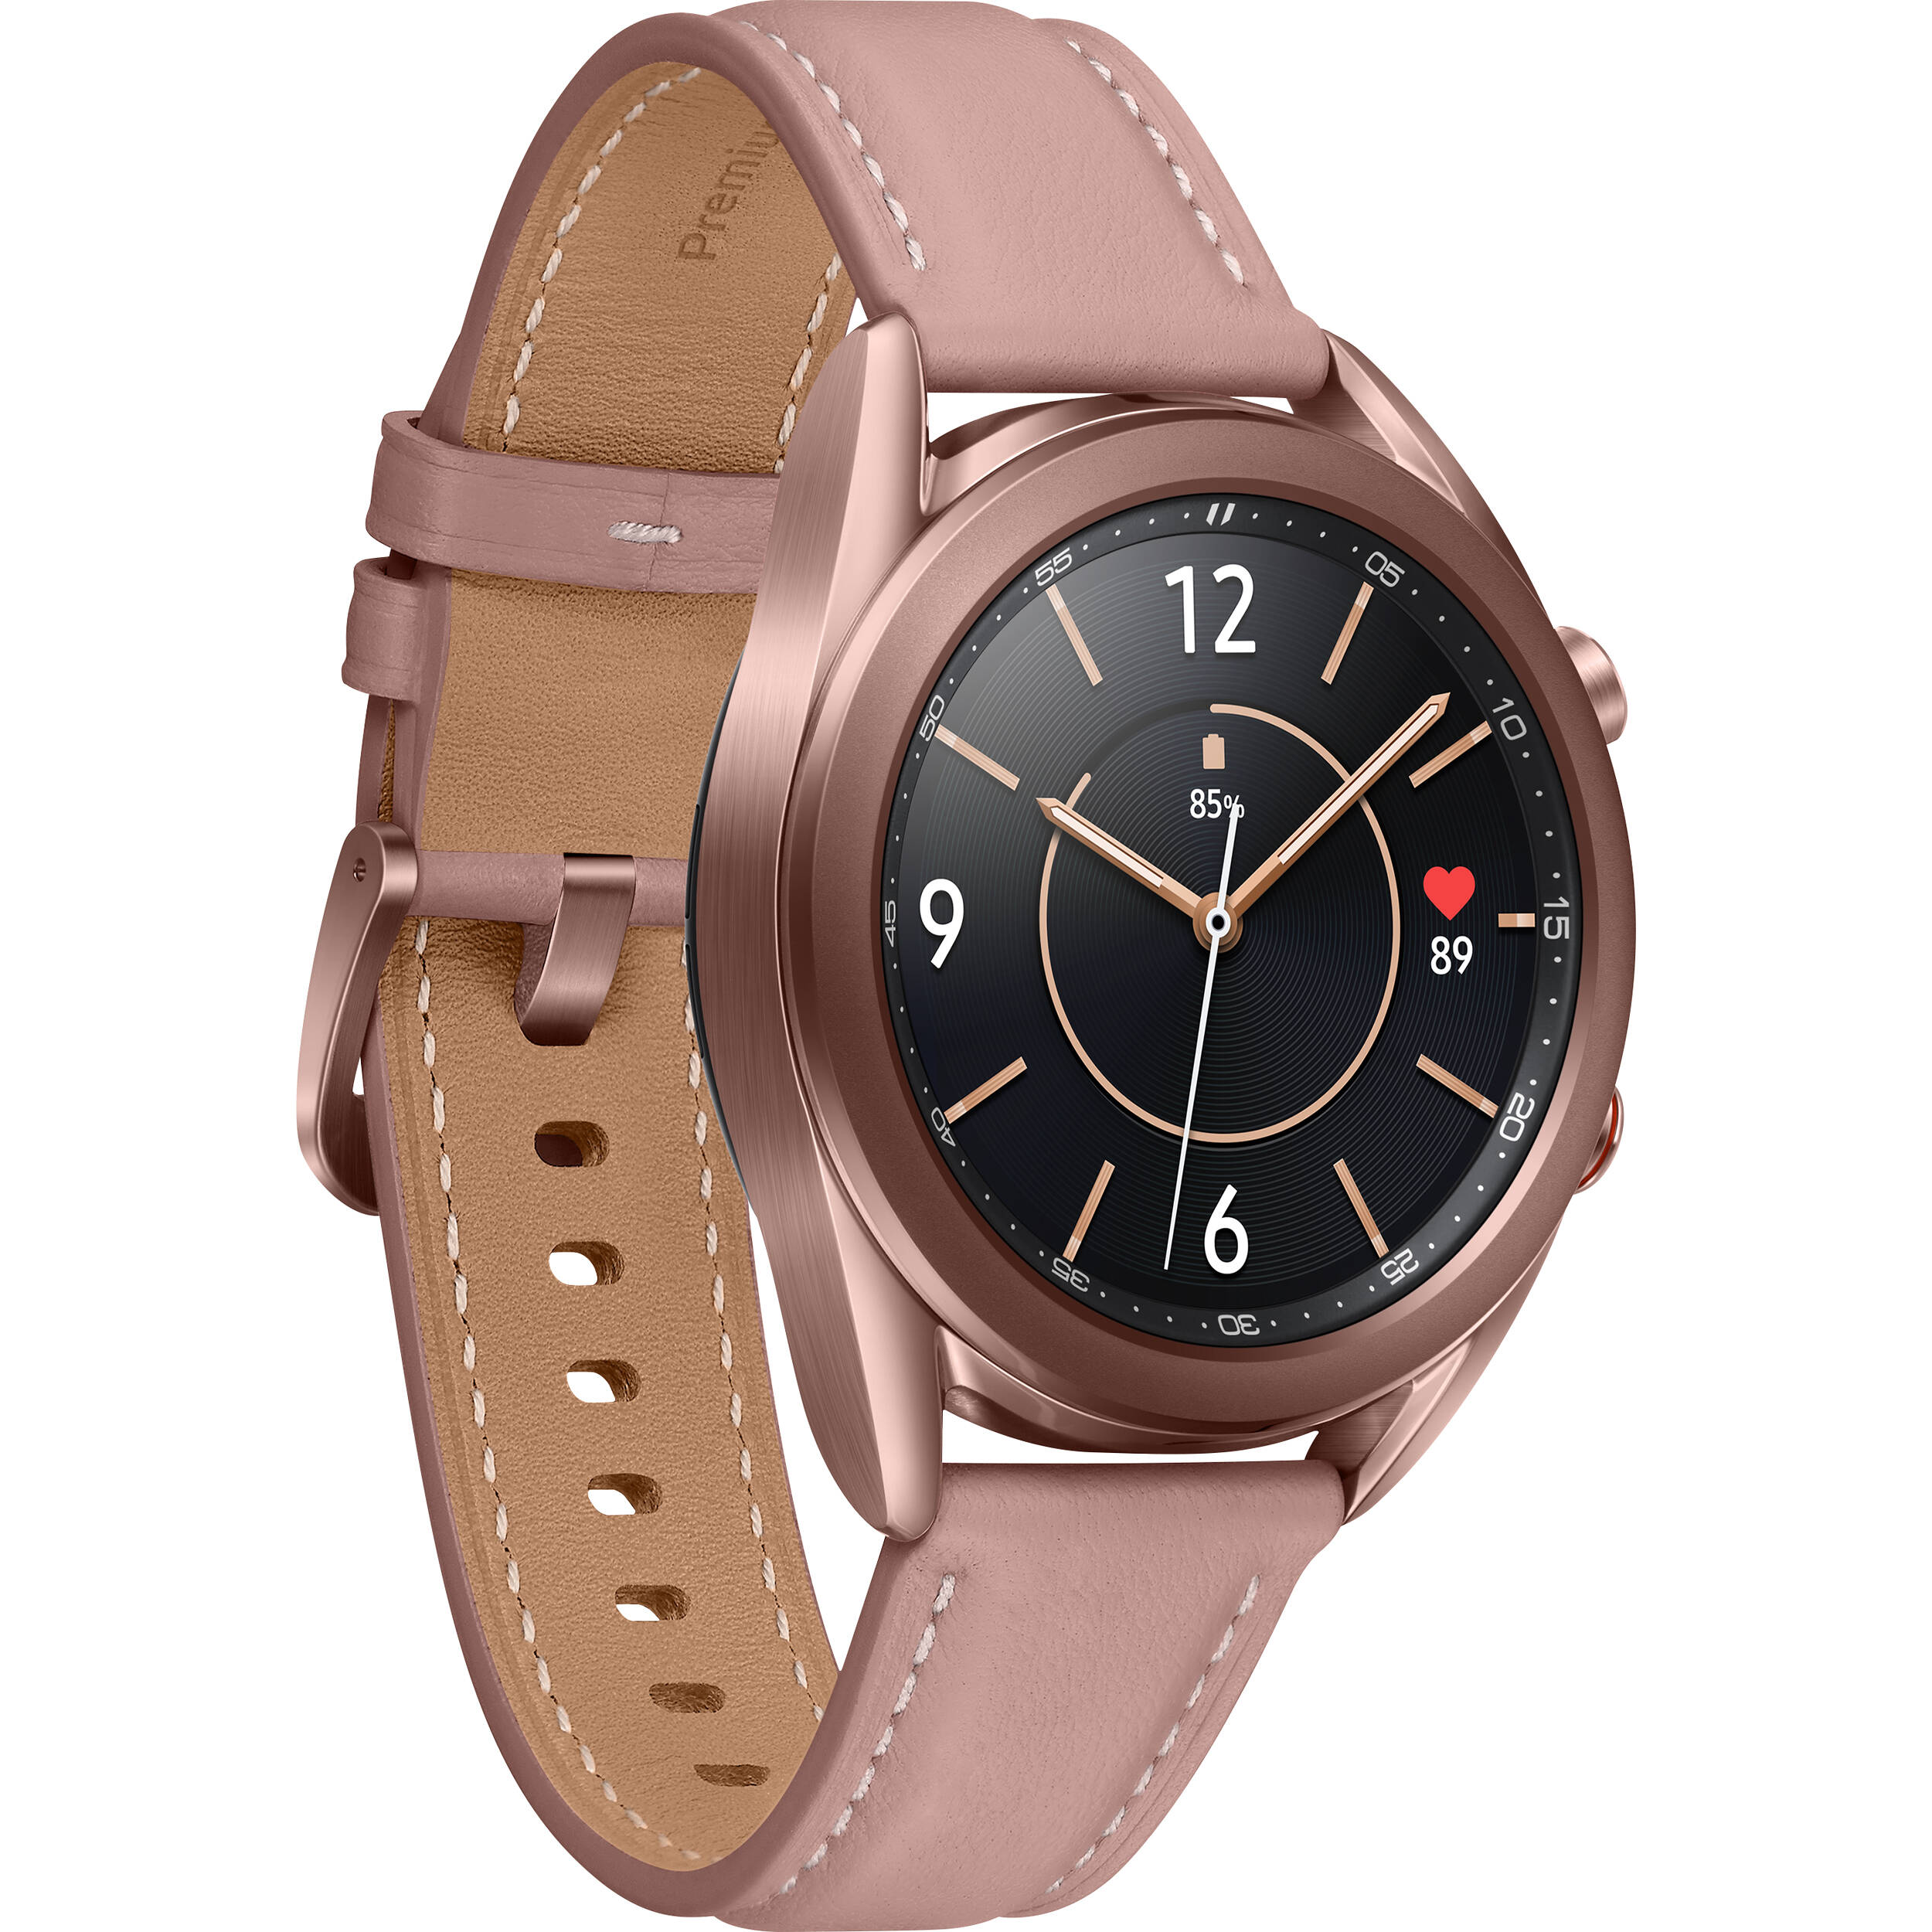 Đồng hồ thông minh Samsung Galaxy Watch3 viền thép Bluetooth (41mm) - Hàng Chính Hãng